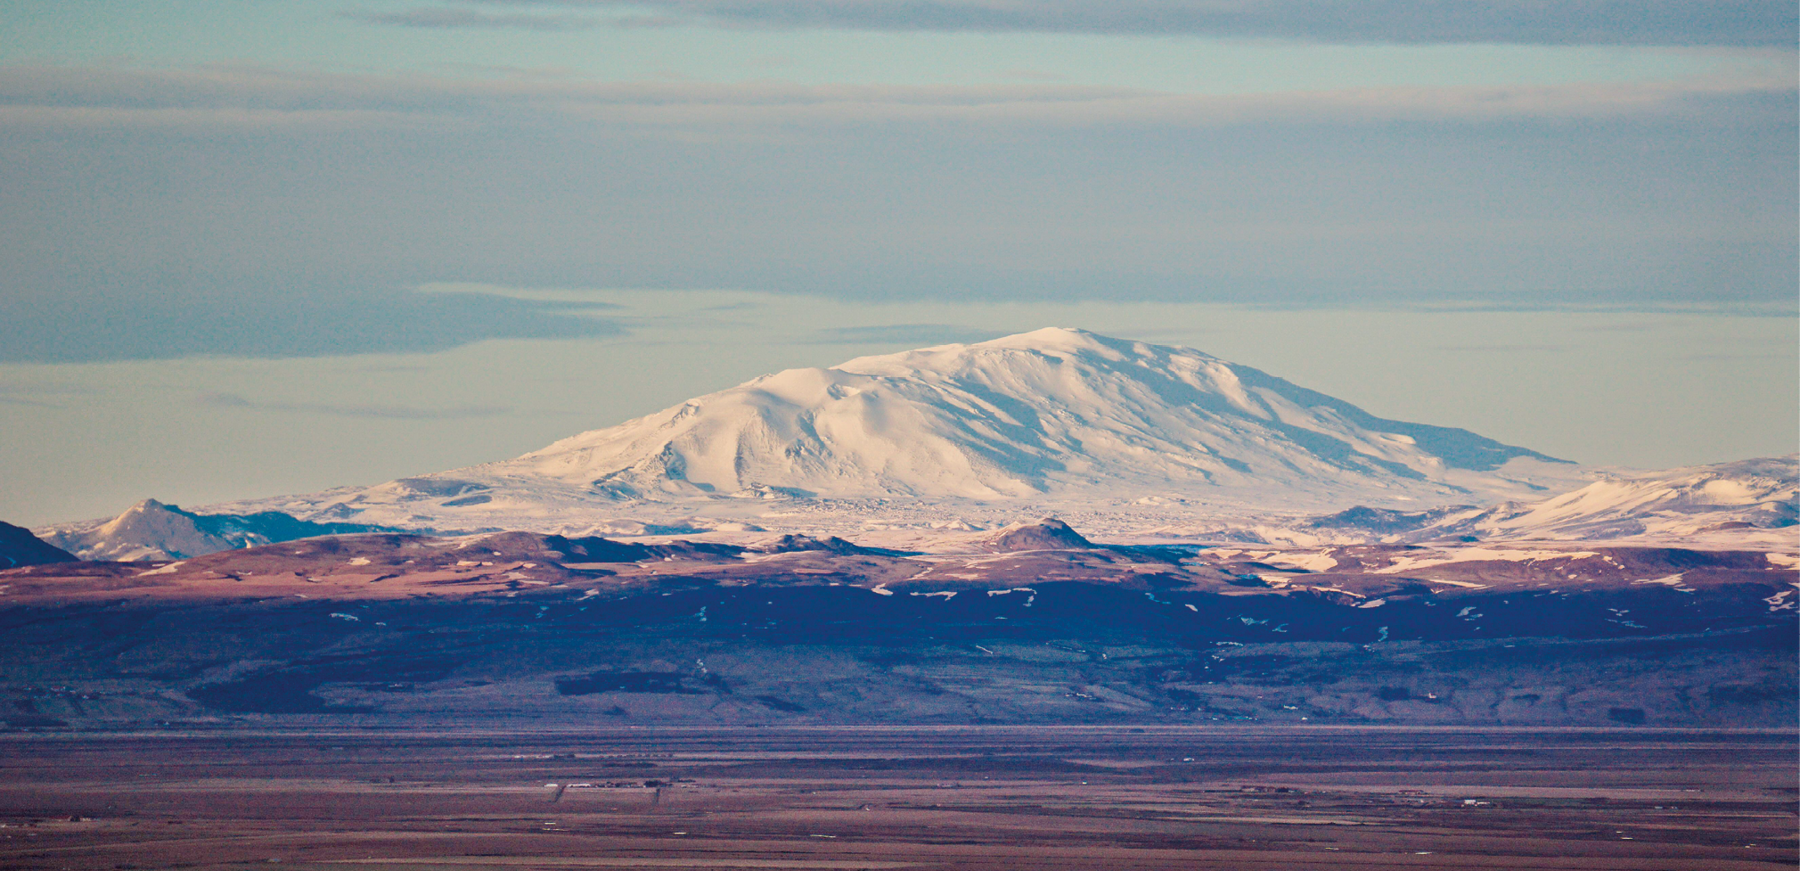 Fotografia. Um grande vulcão coberto de neve, ao fundo. Em segundo plano, montes menores sem neve e, em primeiro plano, campo aberto.